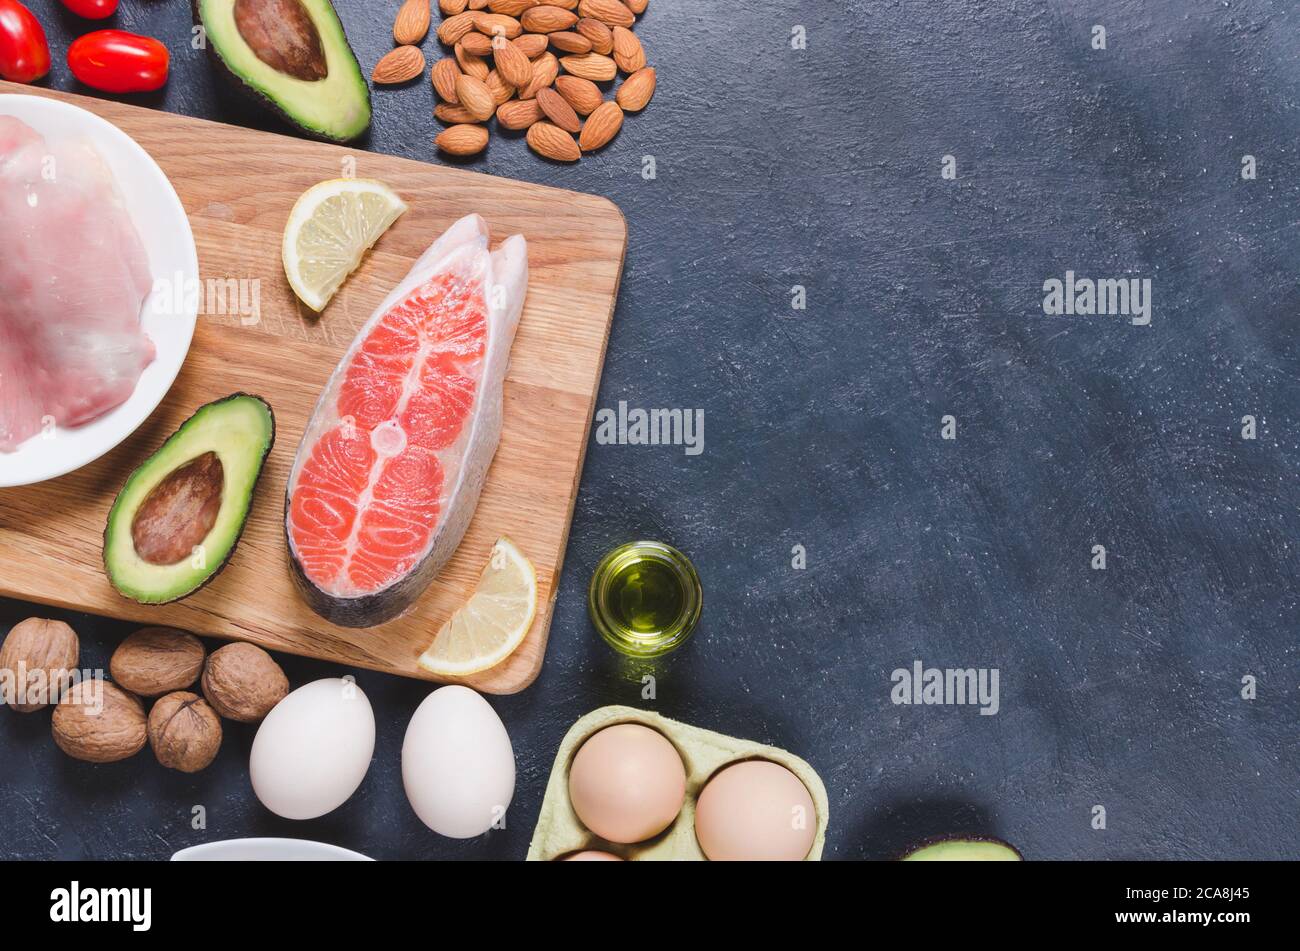 Dieta Keto, comida sana baja en carbohidratos, aguacate, pescado, aceite, nueces sobre fondo negro Foto de stock